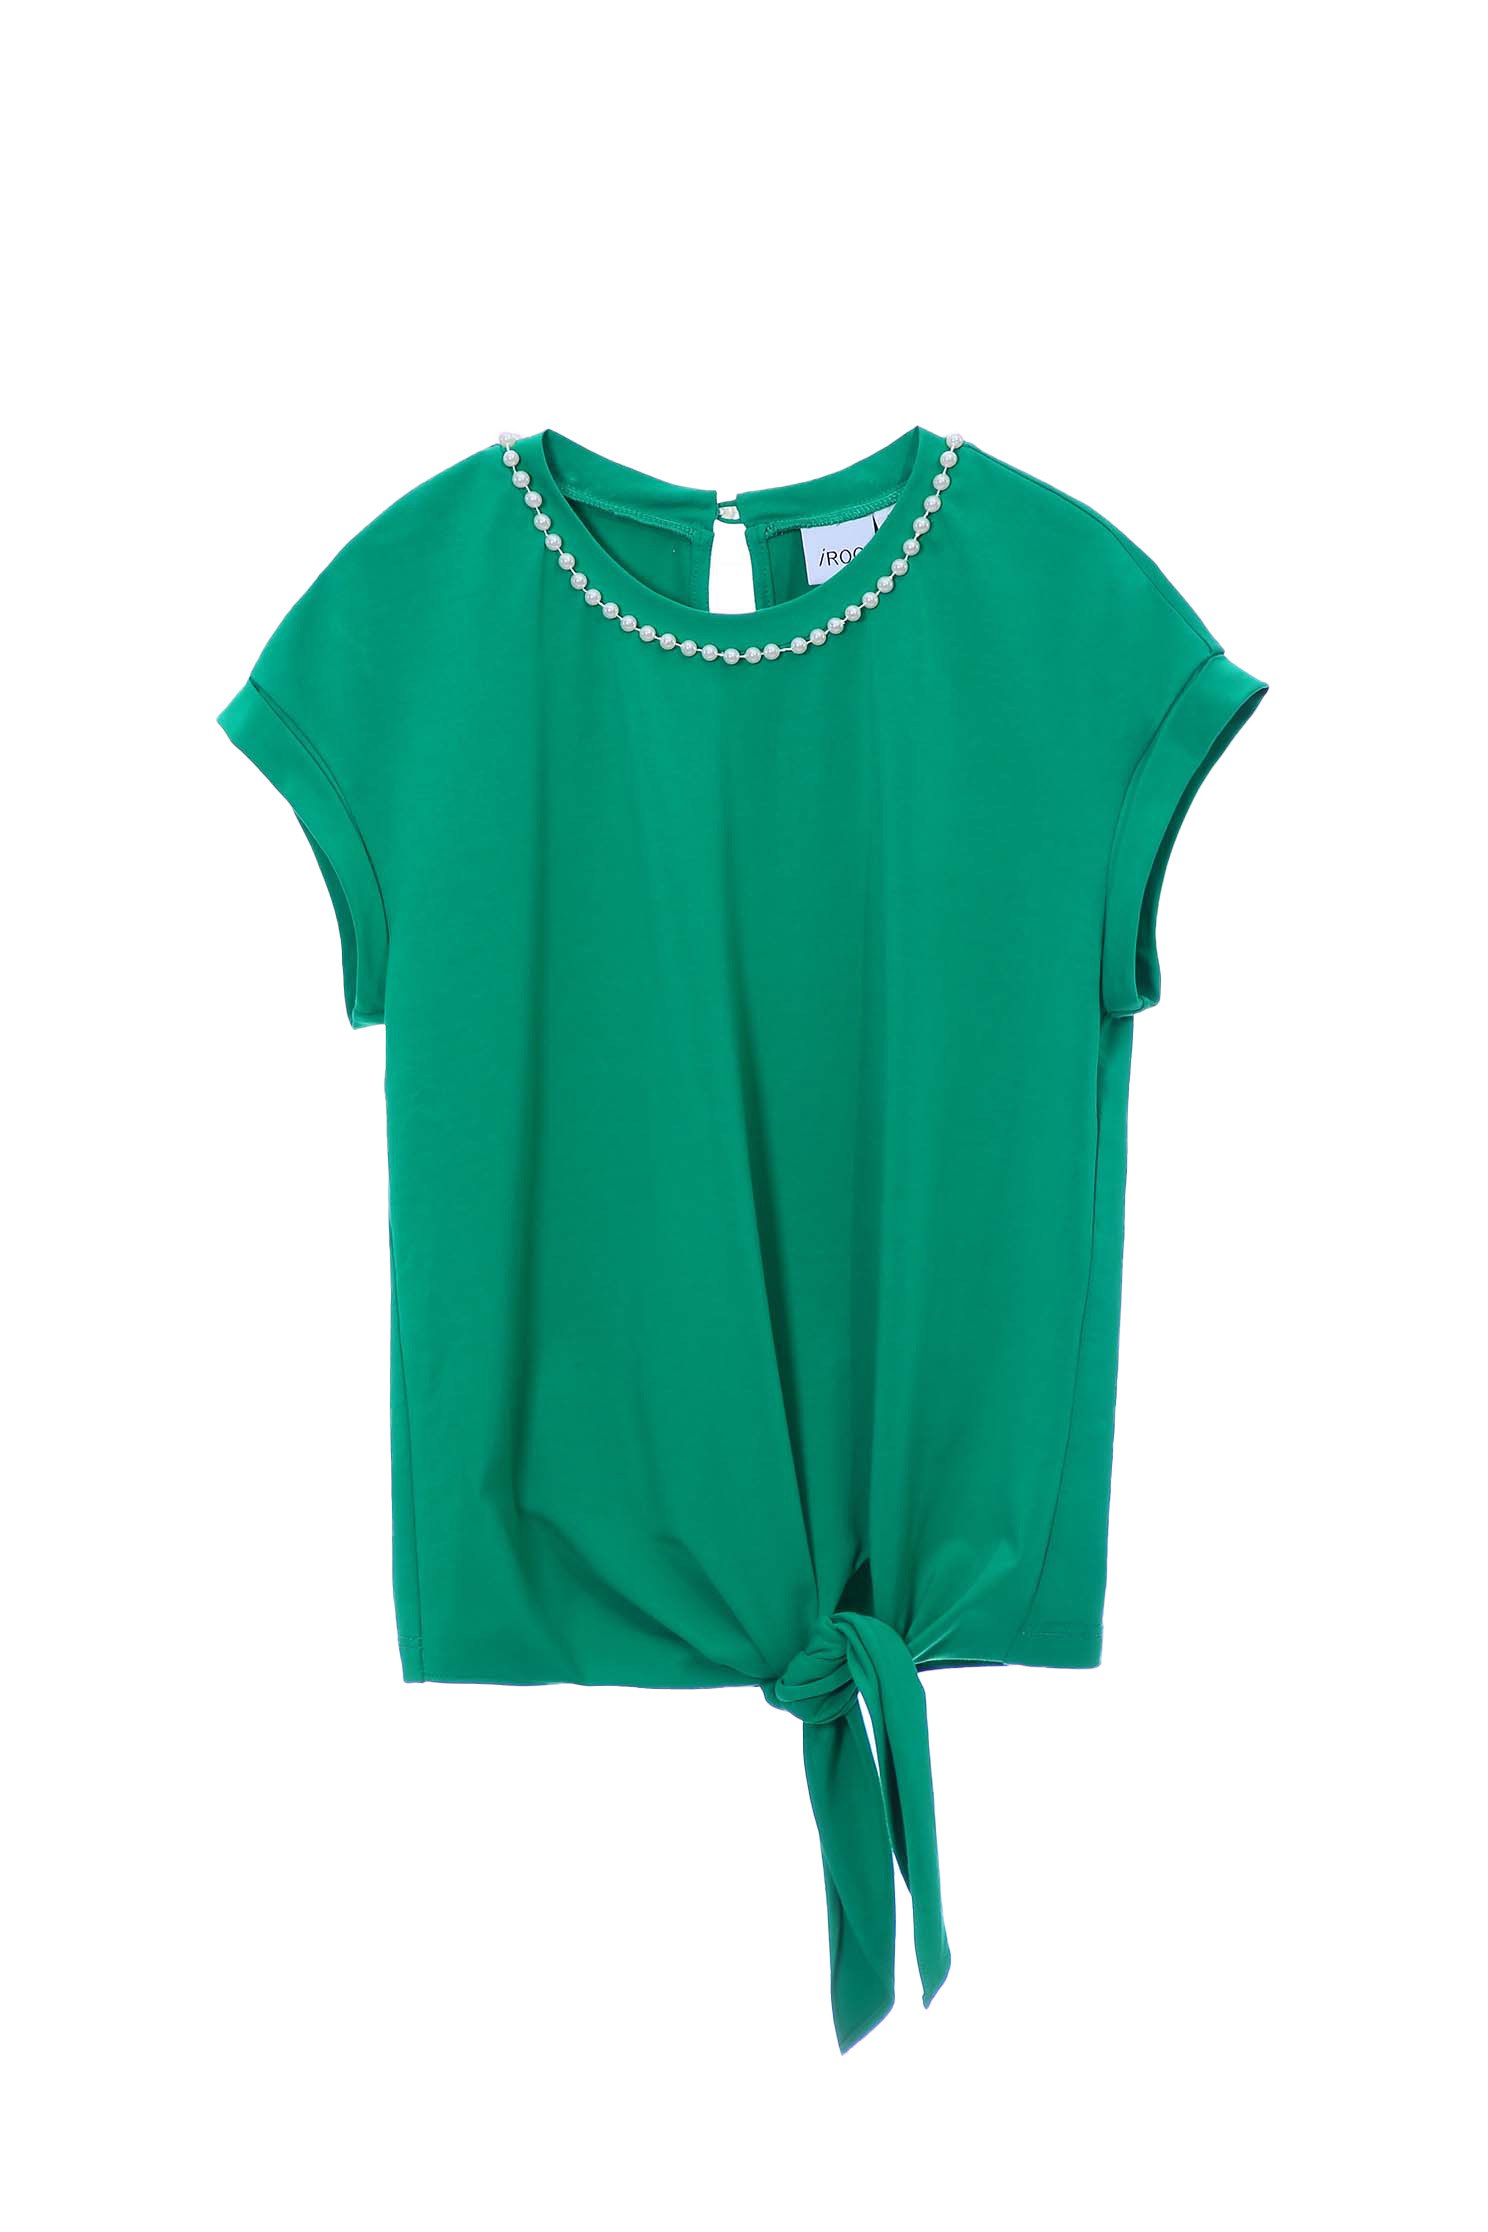 珍珠領圈T恤上衣,珍珠 棉,綠色 上衣,圓領 上衣珍珠領圈T恤上衣,T恤,上衣,春夏穿搭,珍珠,視覺顯瘦